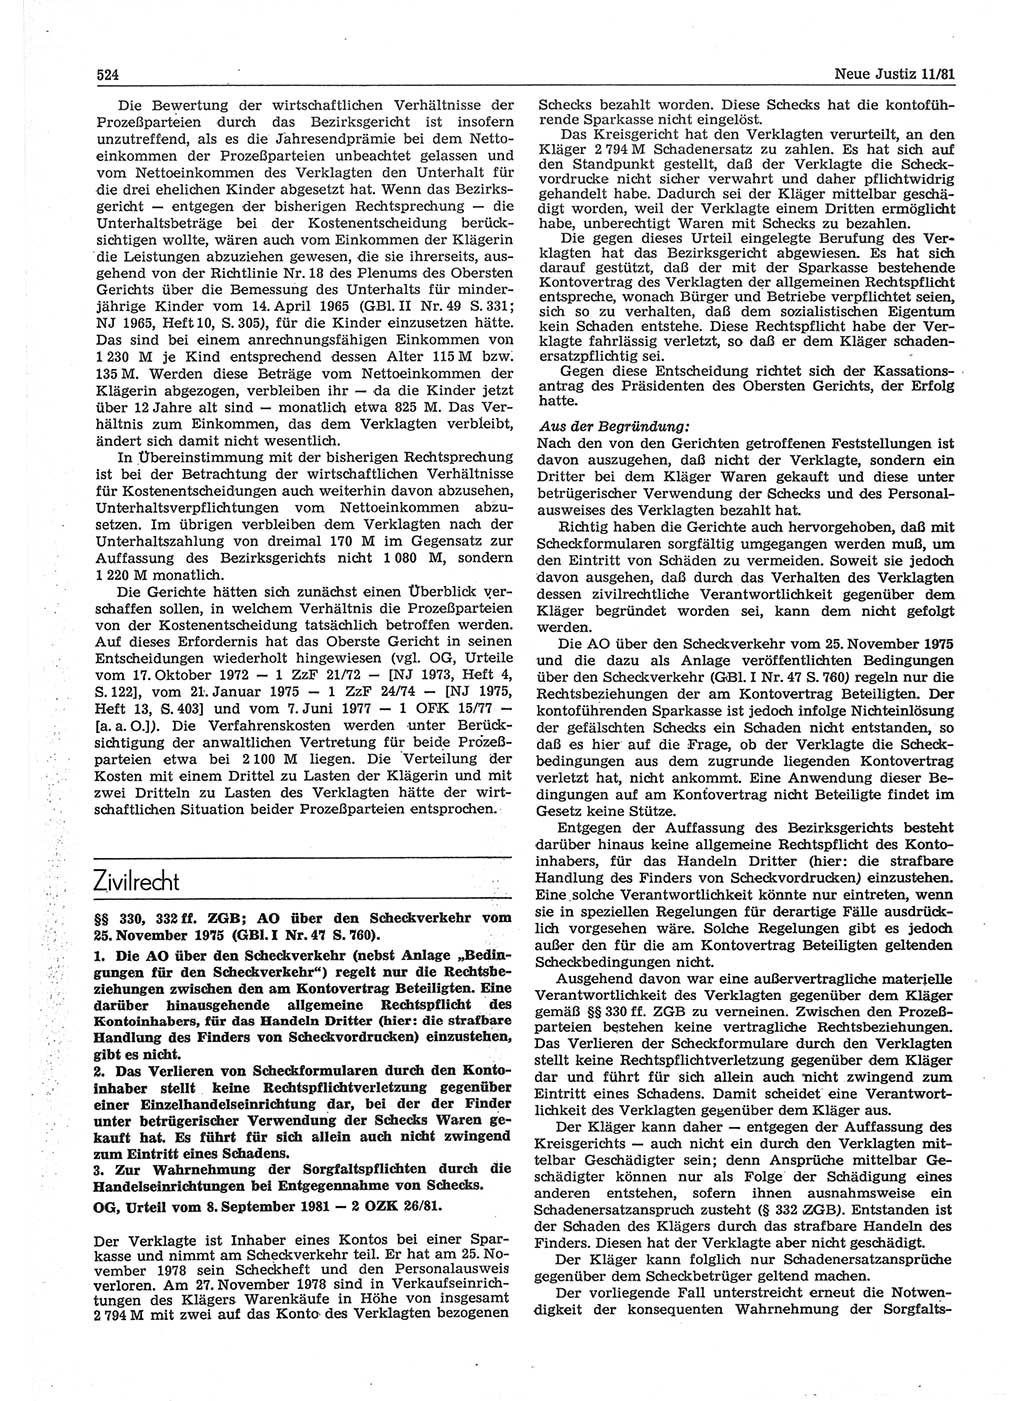 Neue Justiz (NJ), Zeitschrift für sozialistisches Recht und Gesetzlichkeit [Deutsche Demokratische Republik (DDR)], 35. Jahrgang 1981, Seite 524 (NJ DDR 1981, S. 524)